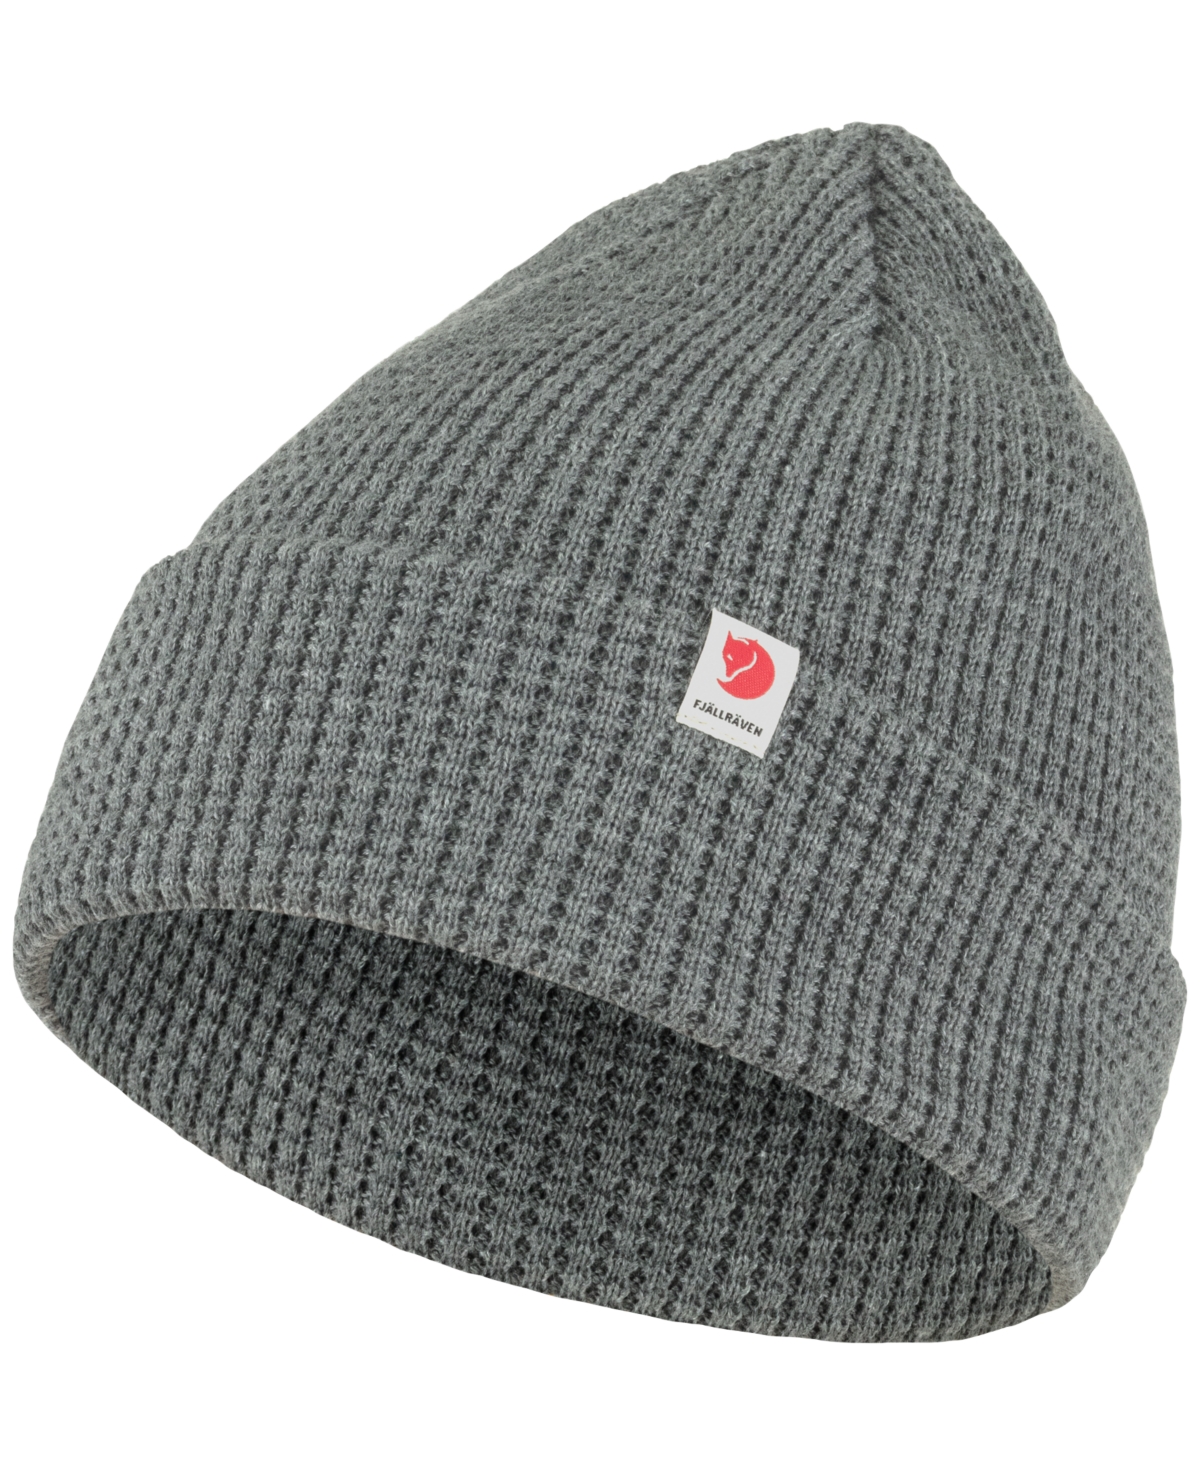 Tab Hat - Grey